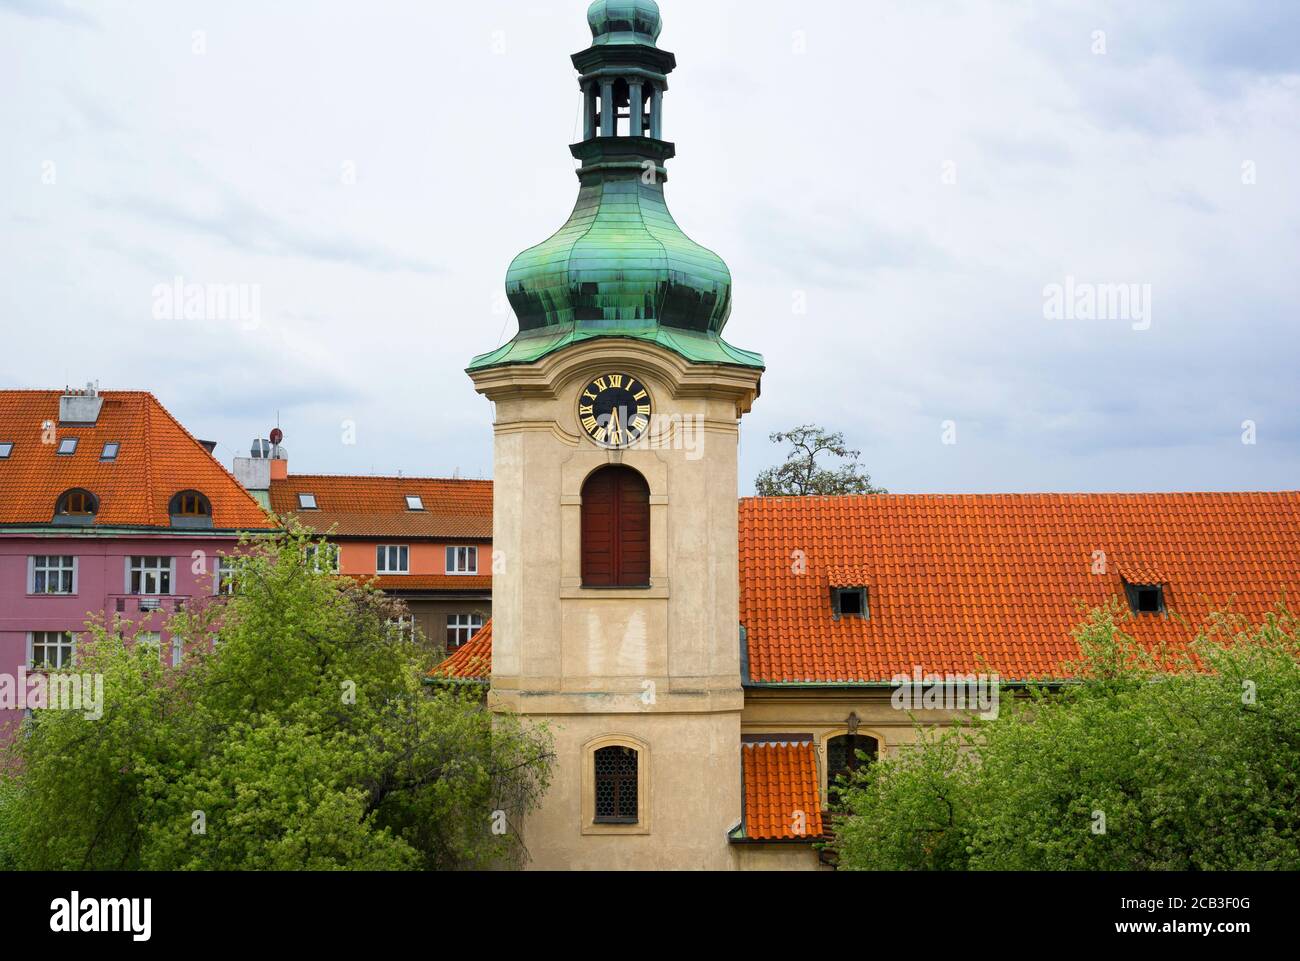 Eglise saint Nicolas, Prague, Vrsovice - Eglise de style baroque. Le bâtiment sacré a une coupole en cuivre vert. Maisons et maisons en rangée avec toit rouge Banque D'Images